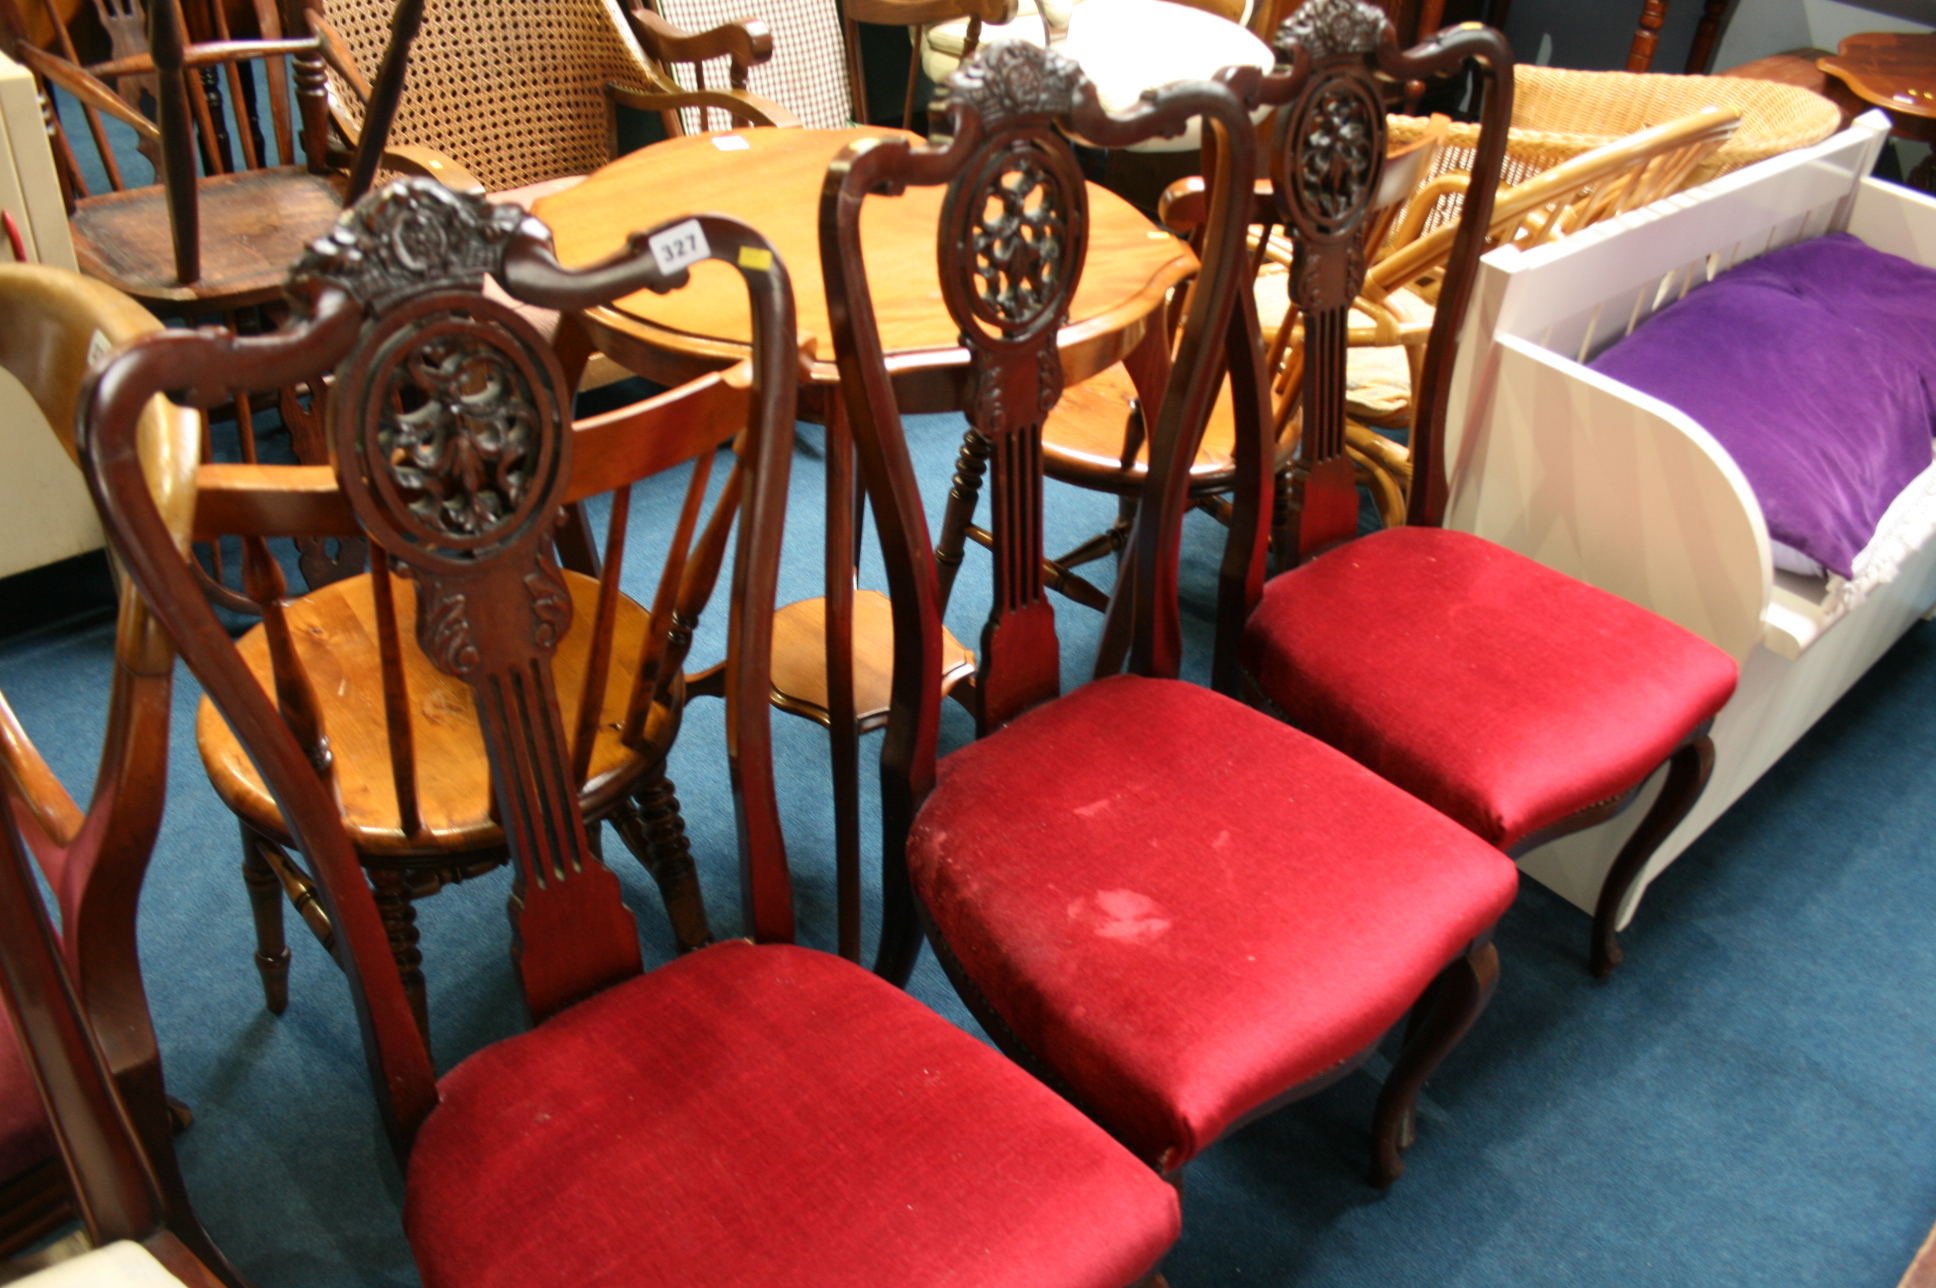 Three mahogany chairs